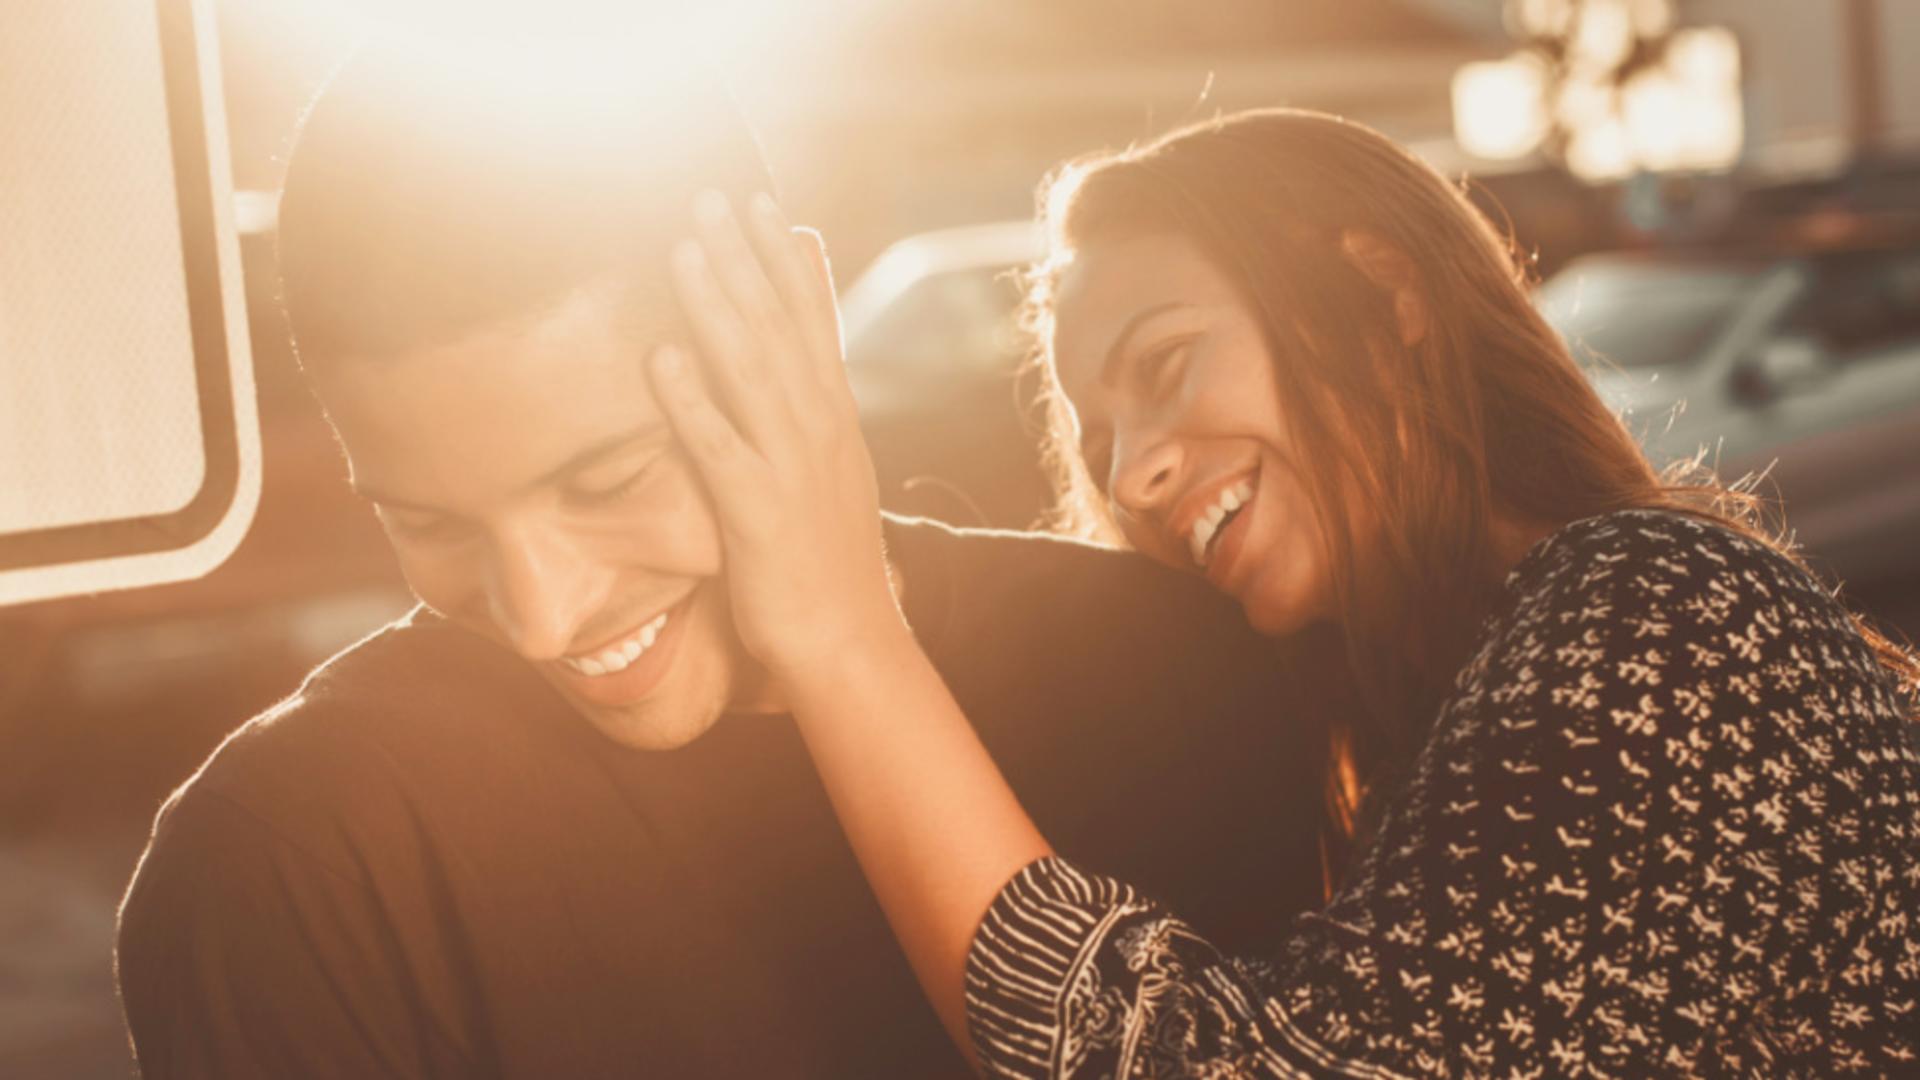  5 cuvinte pe care bărbații au nevoie să le audă de la partenerele lor - Ce au nevoie pentru a fi fericiți